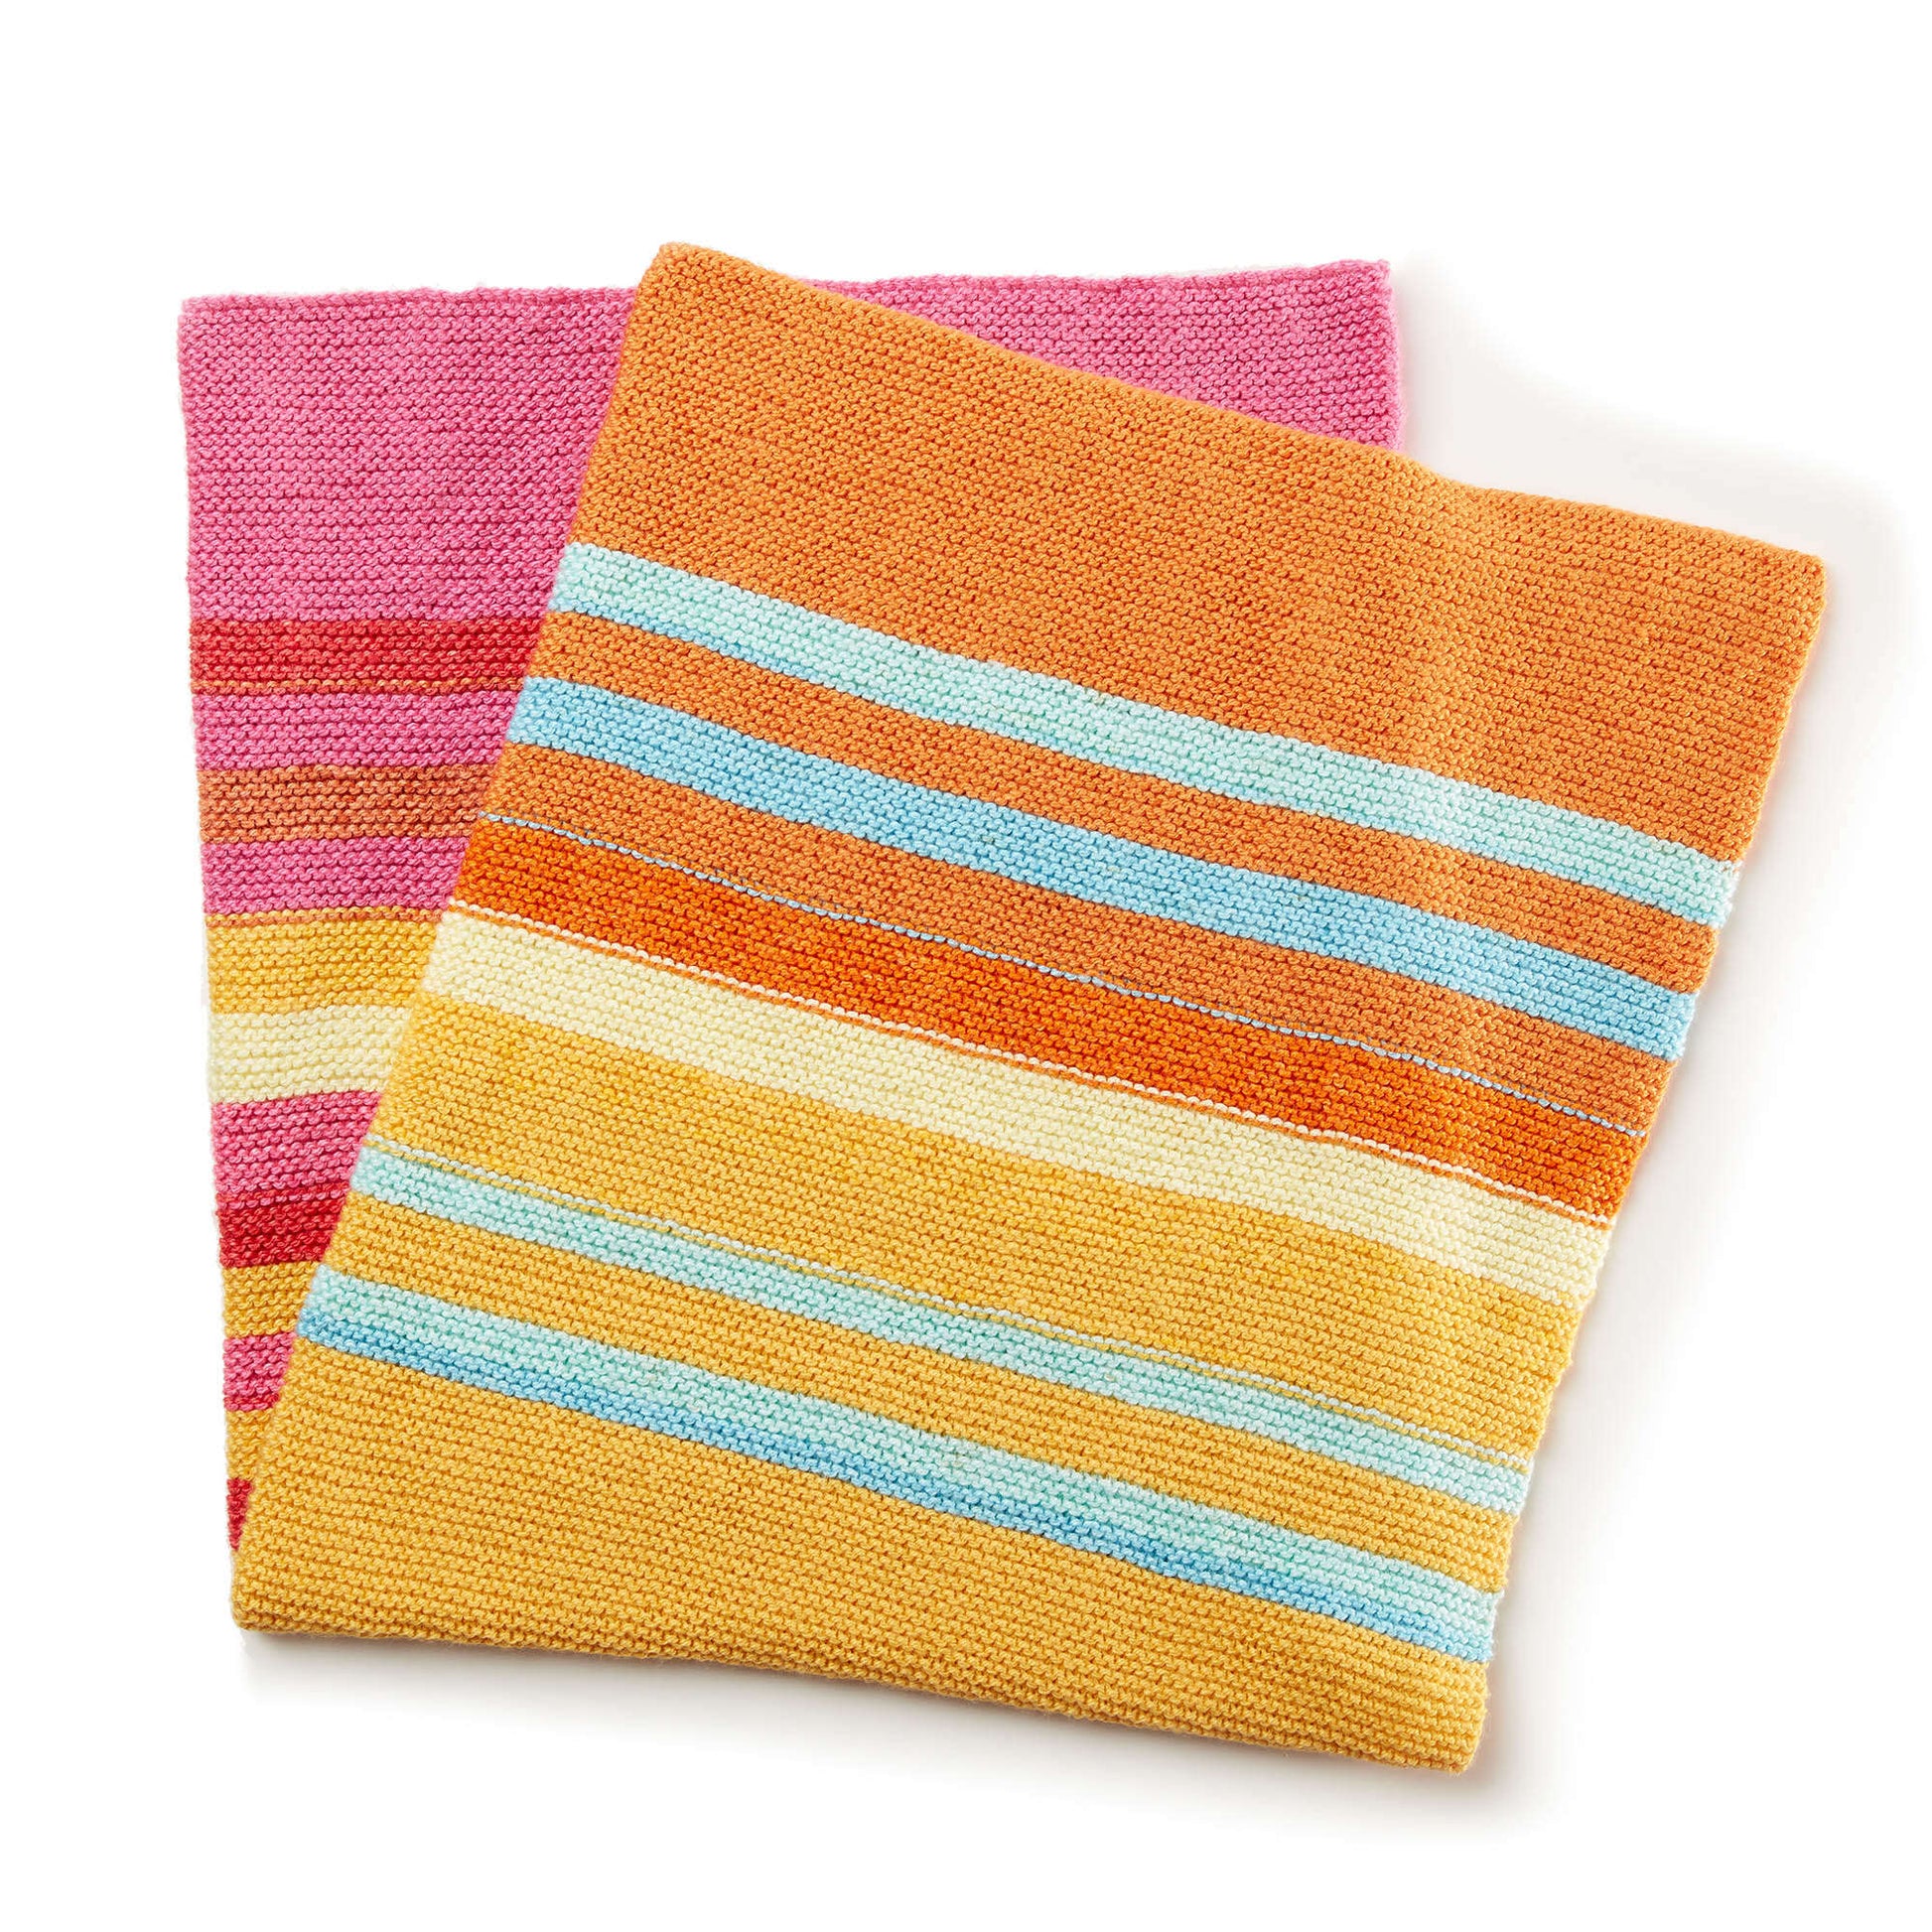 Free Bernat Fading Stripes Knit Baby Blanket Pattern